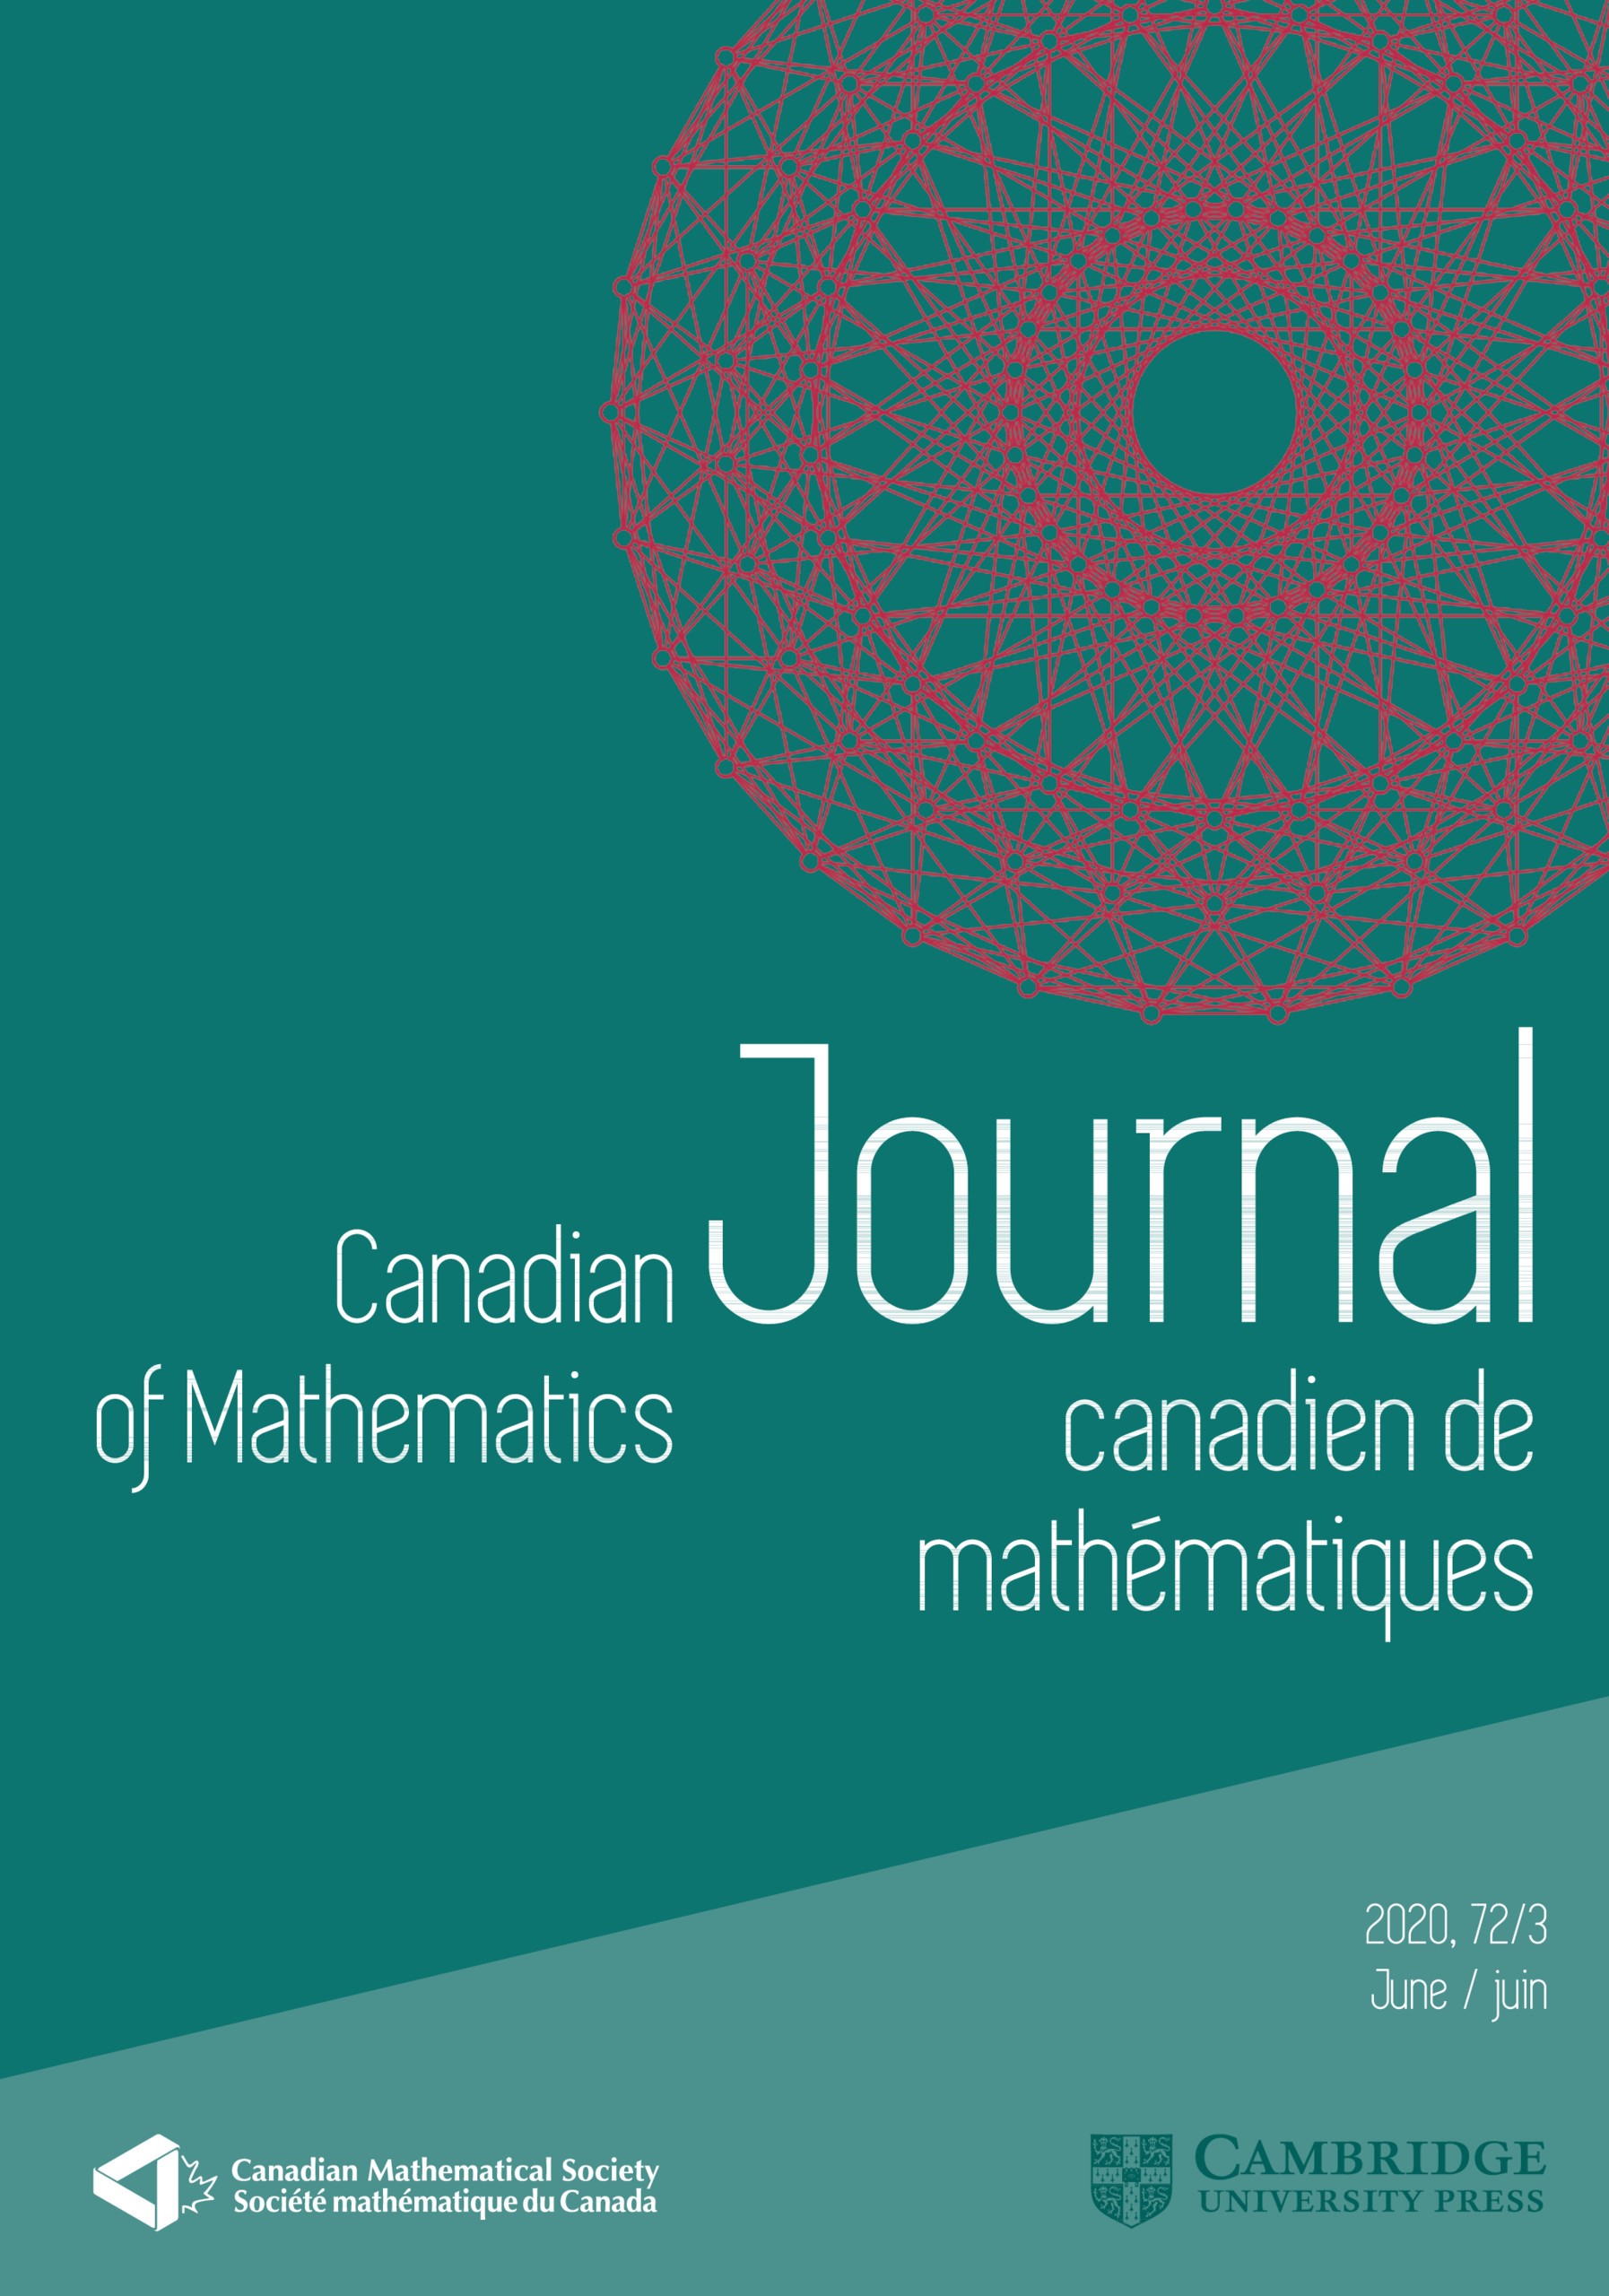 Cambridge mathematics. Lobachevskii Journal of Mathematics.